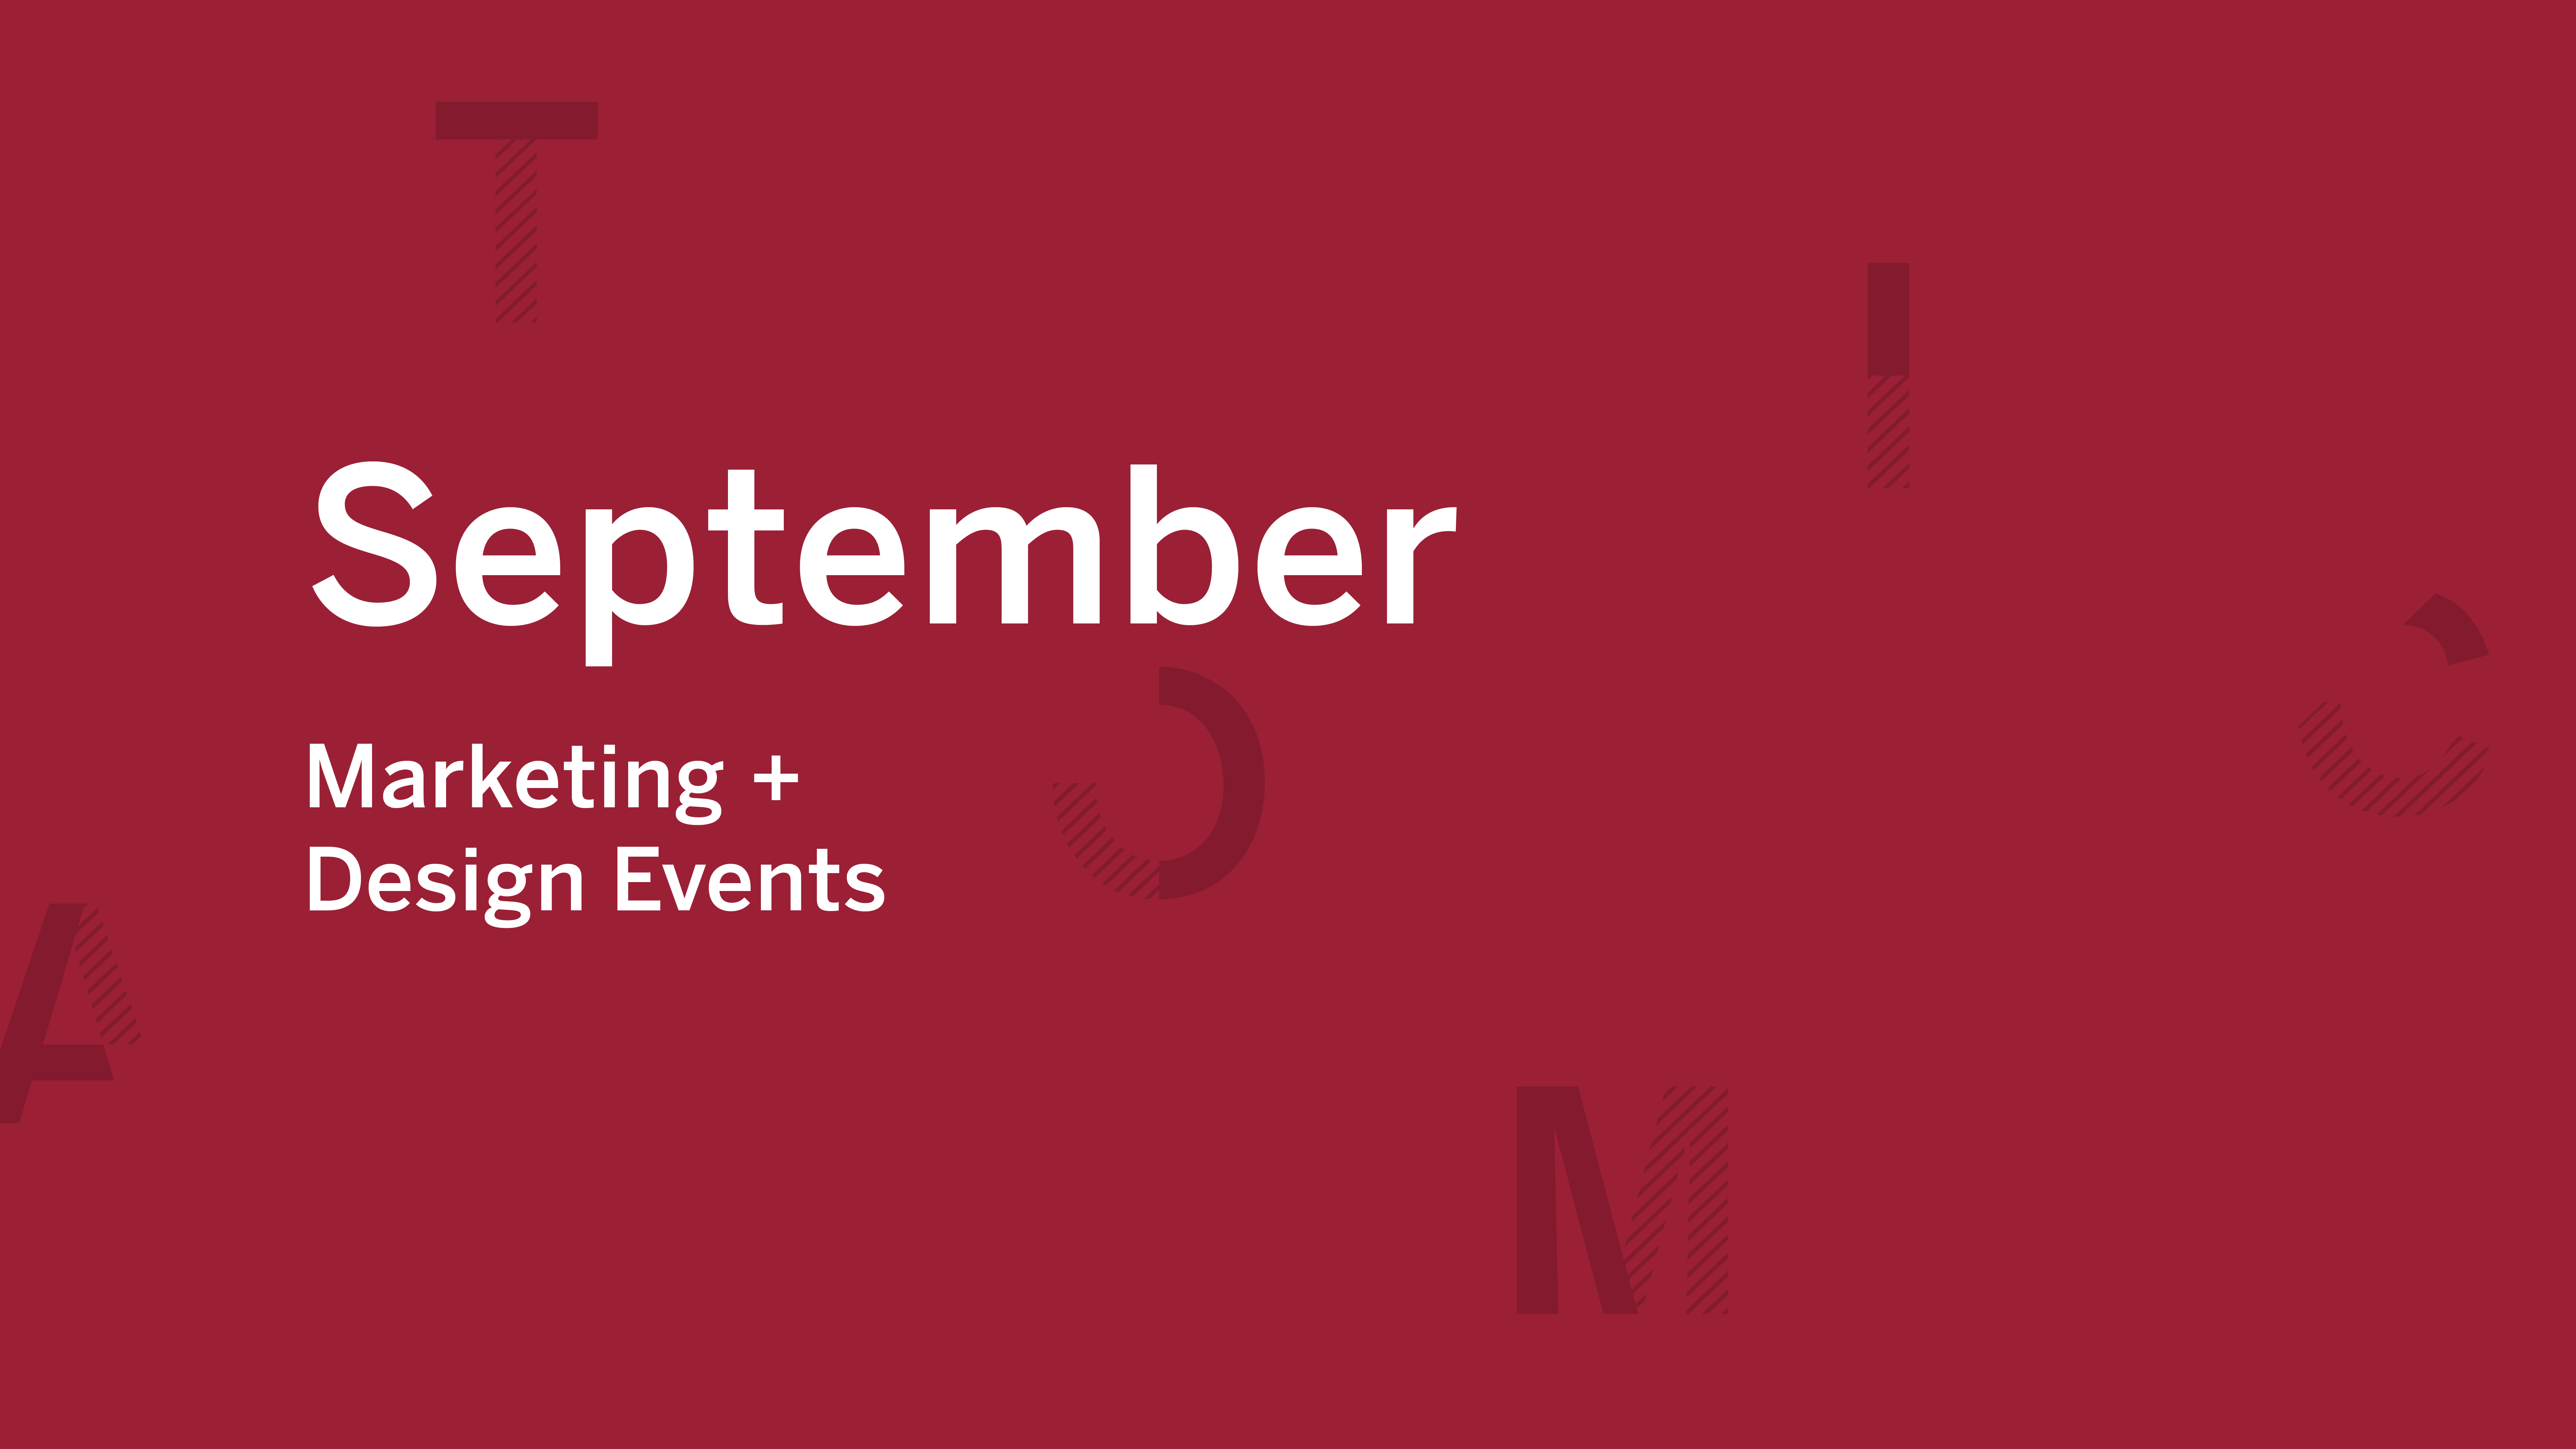 September Marketing + Design Events